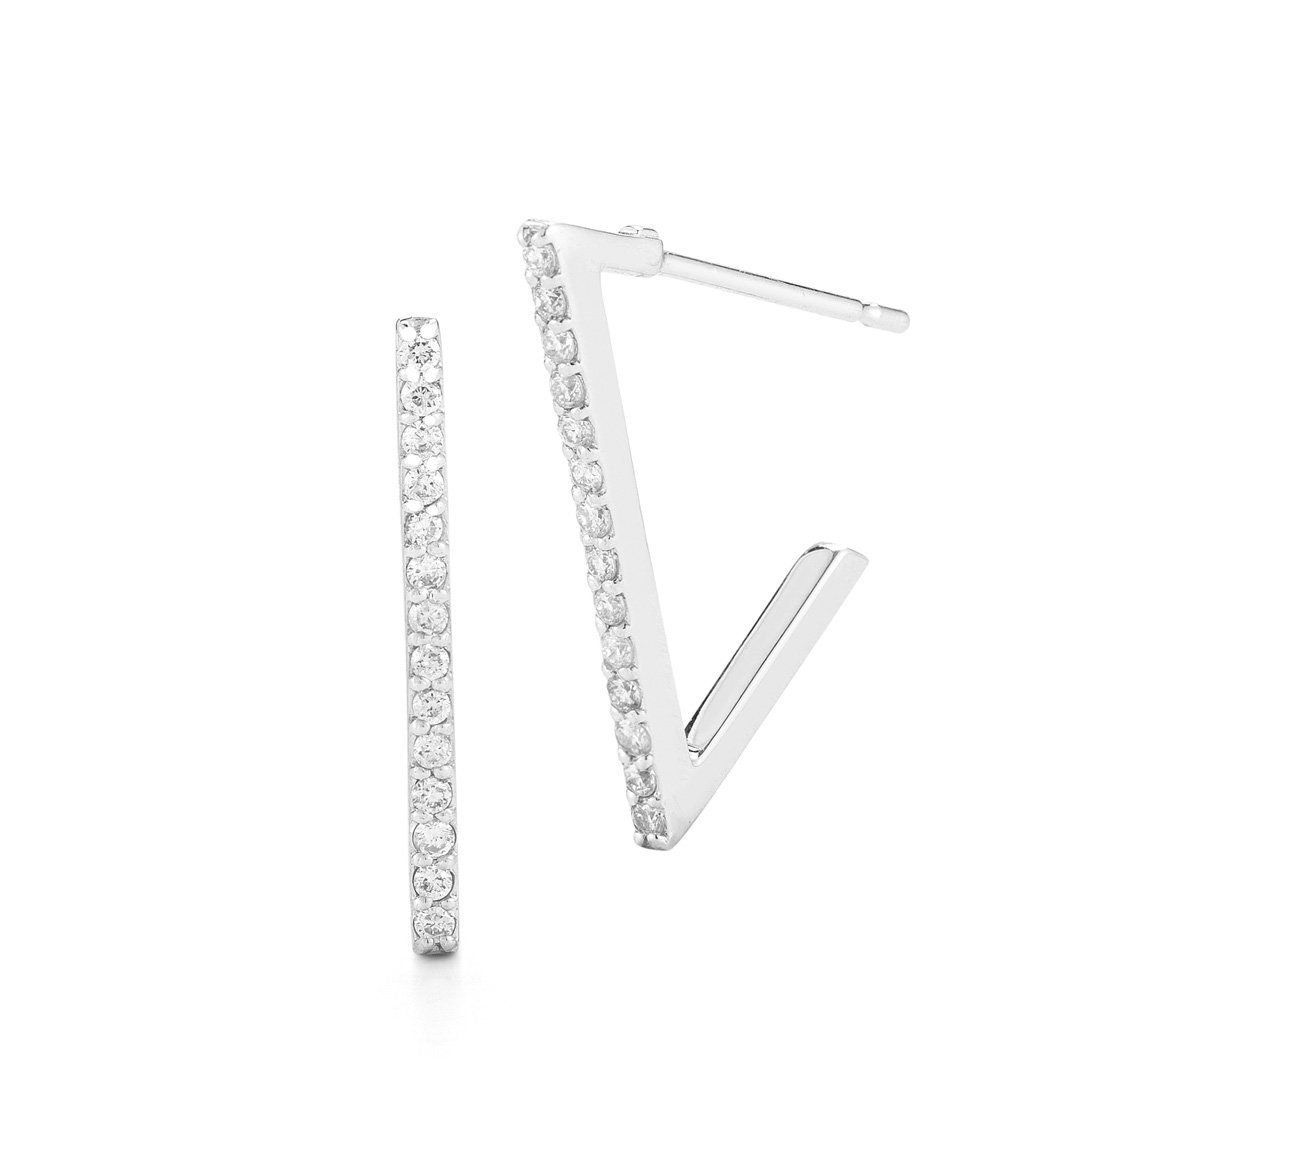 Barbela Design Diamond Titan 14kt White Gold Earrings